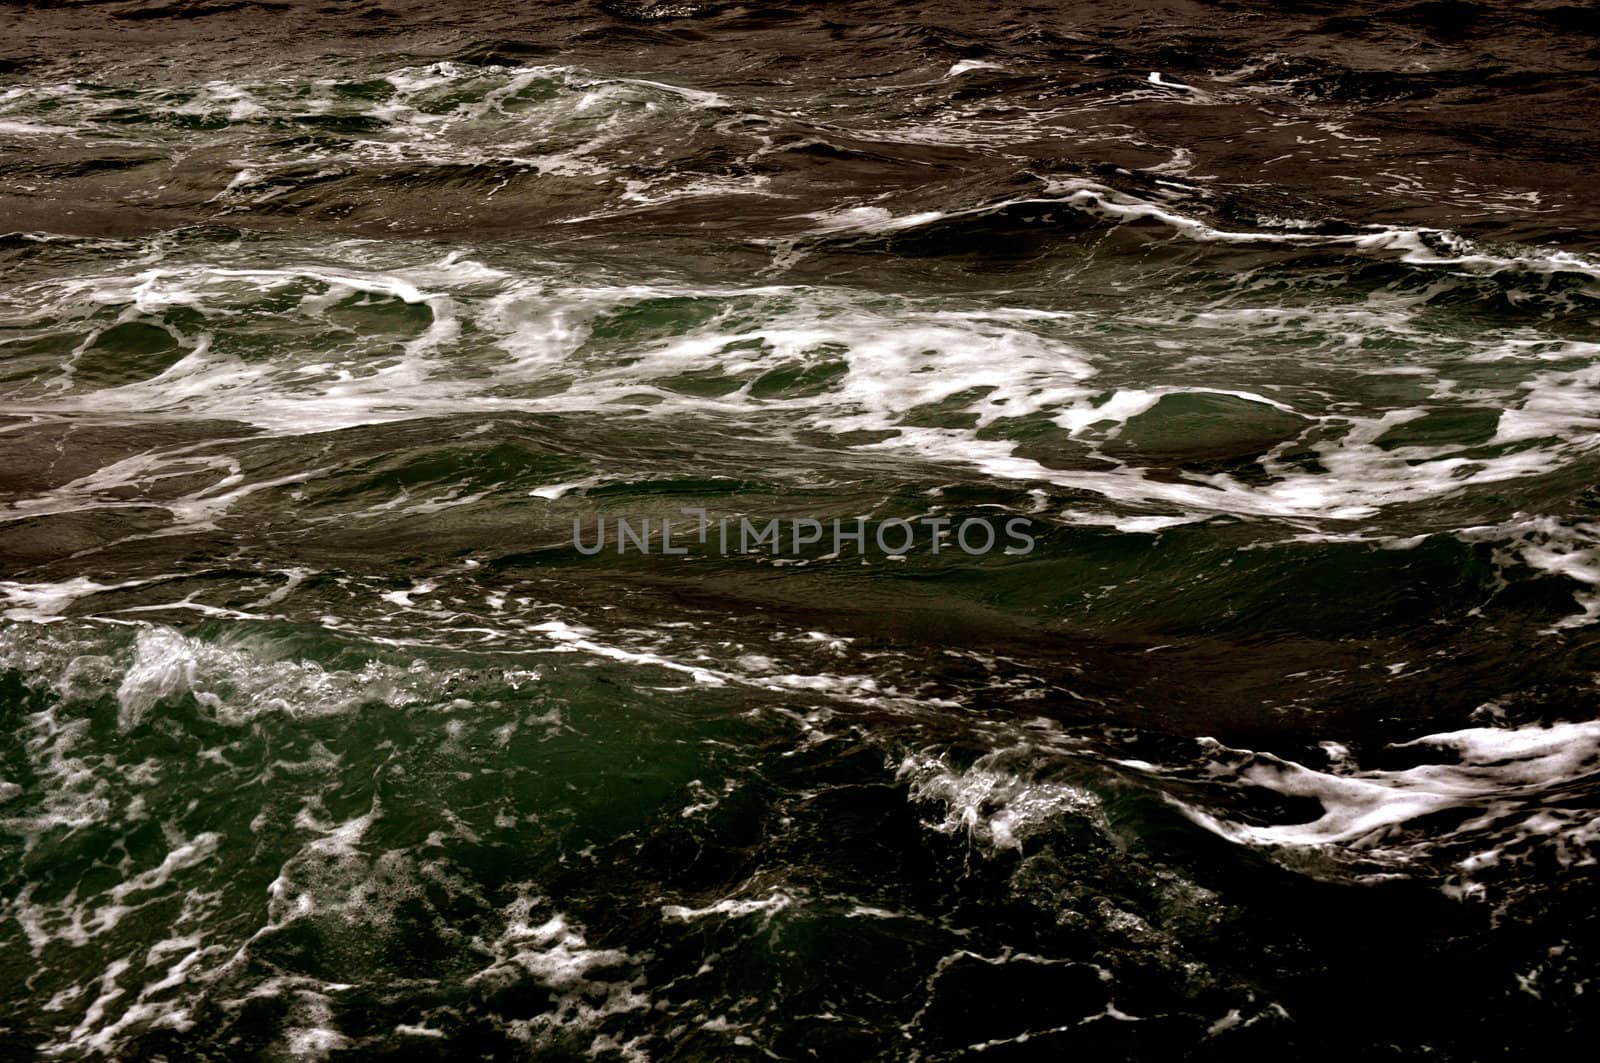 Ocean waves background by RefocusPhoto